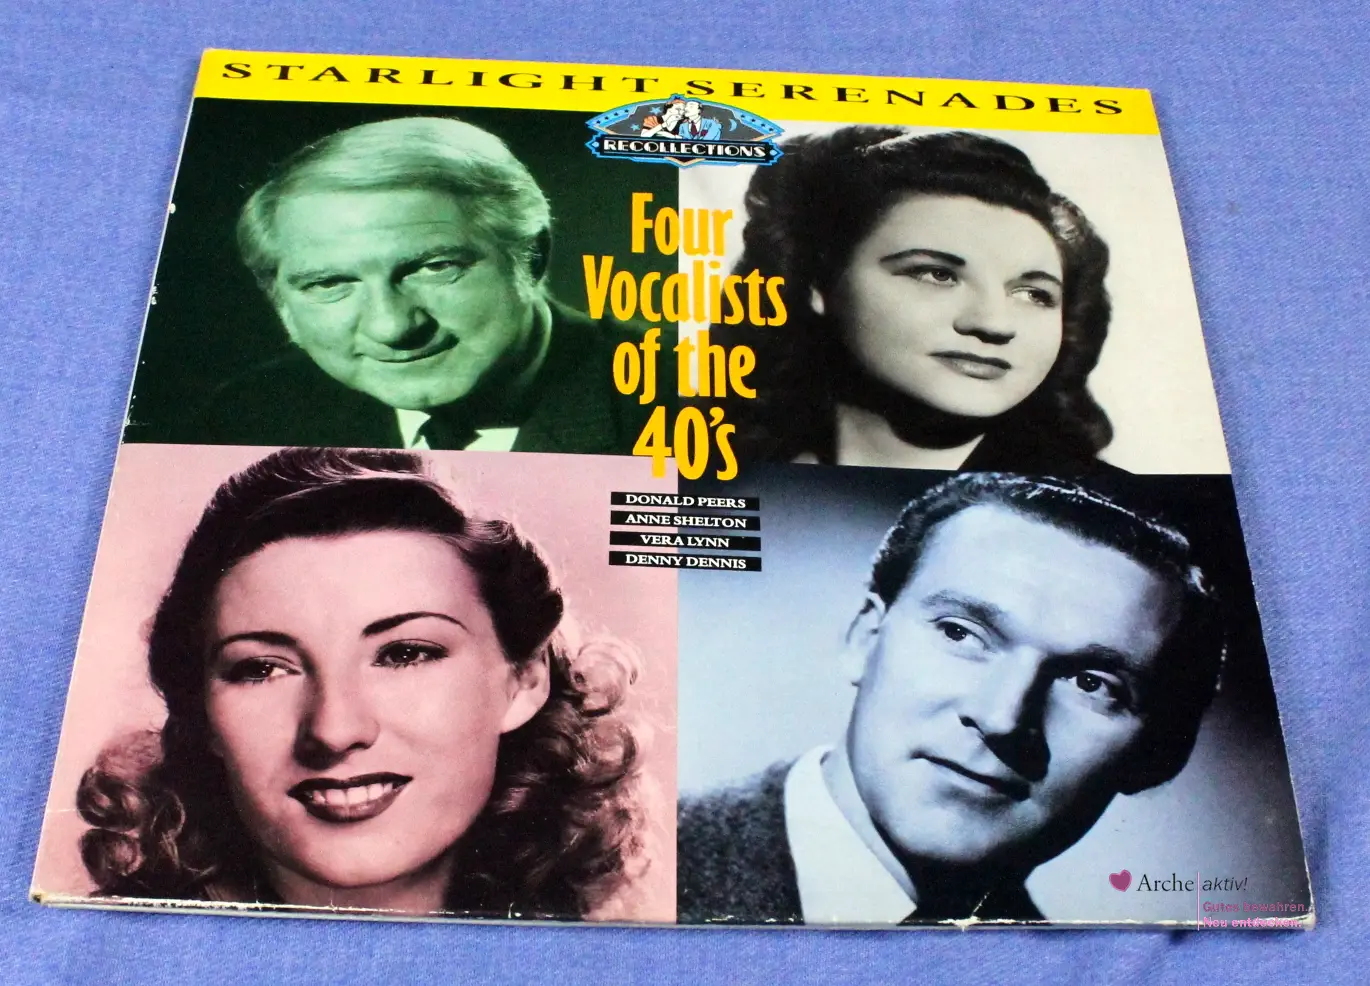 Donald Peers, Anne Shelton, Vera Lynn, Denny Dennis - Starlight Serenades, 2 LPs, gebraucht